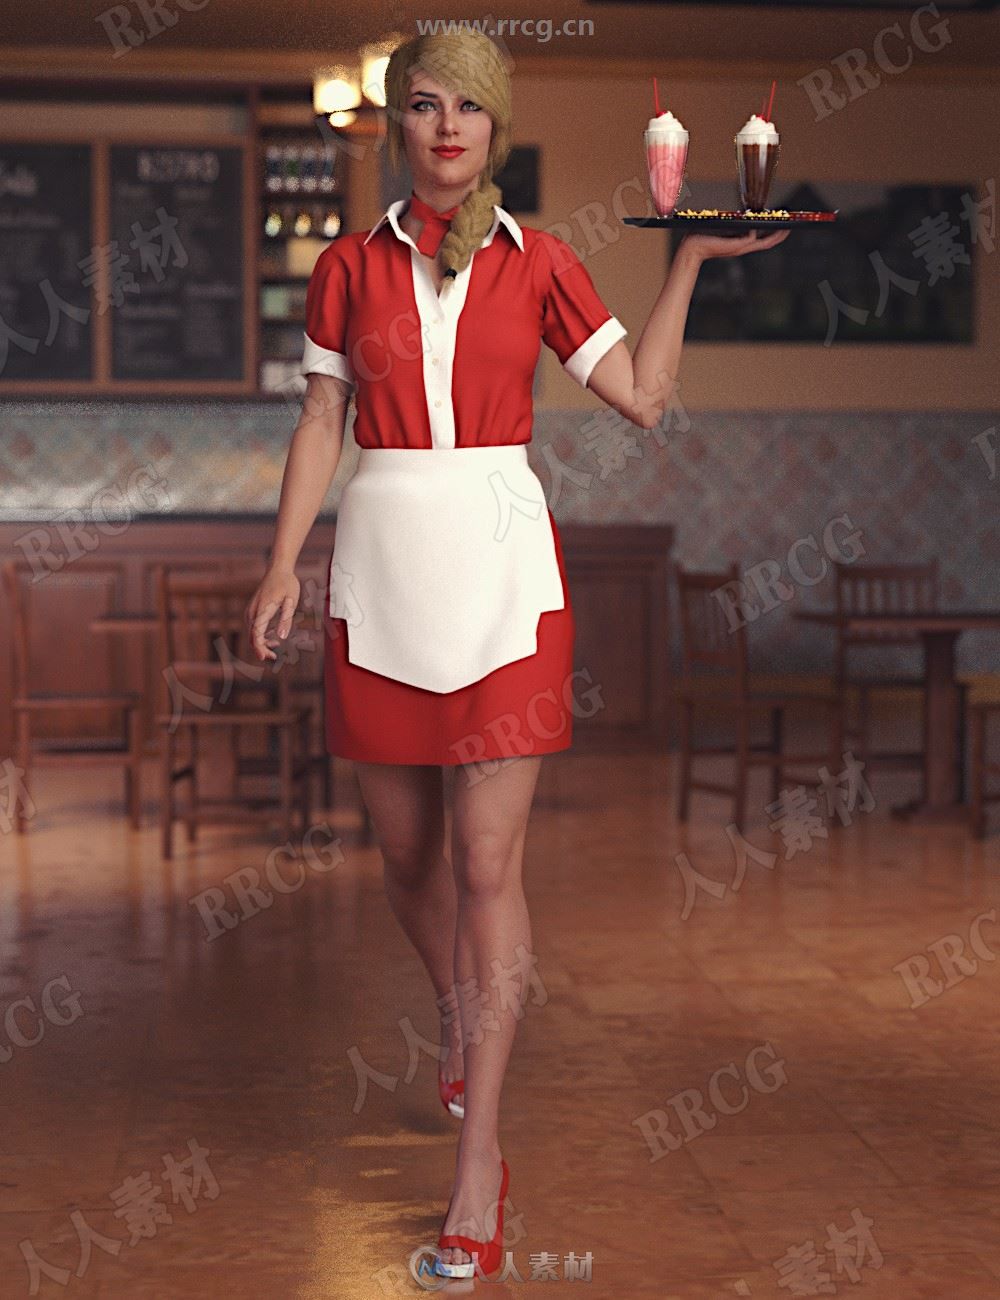 高档餐厅女性服务员工作制服套装3D模型合集